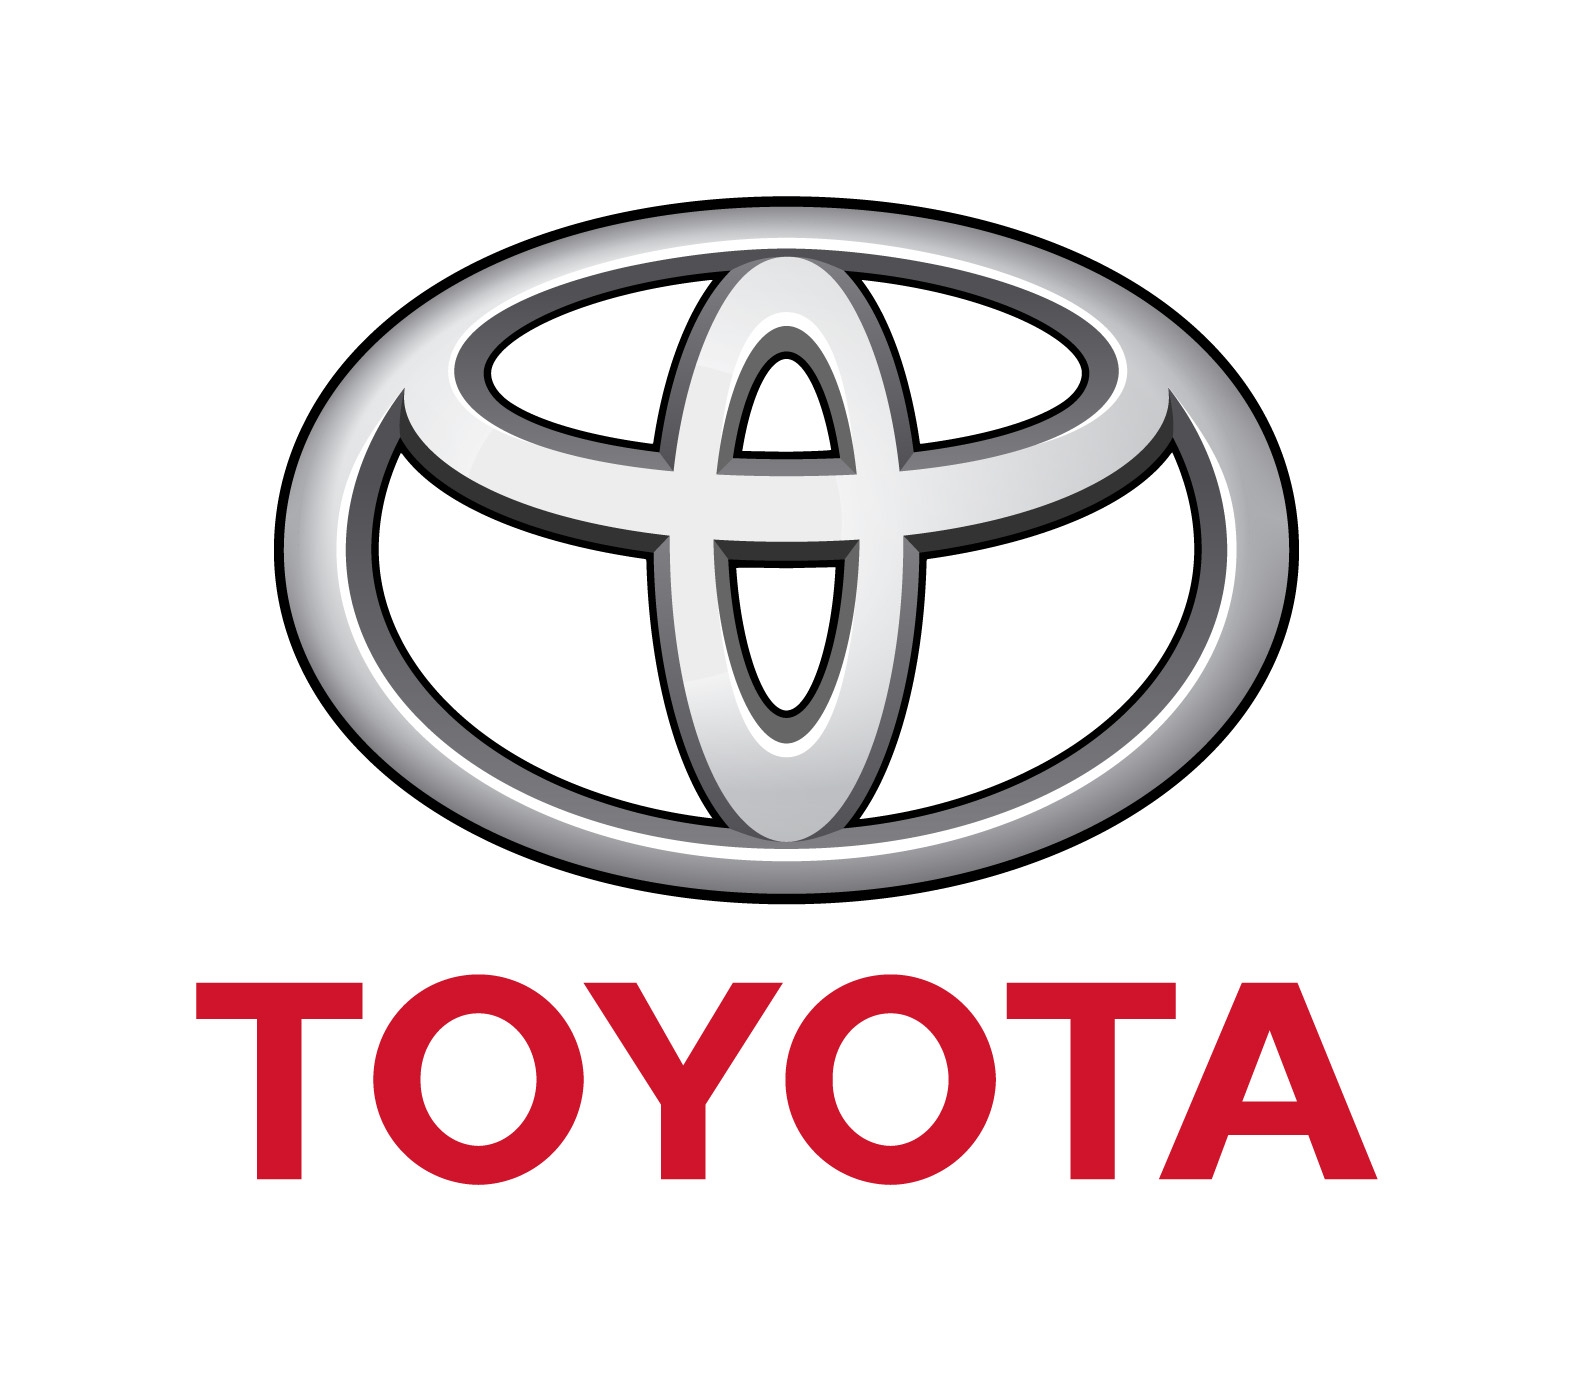 Toyota-symbol-3.jpg?_sm_au_=iWjHWrnT43nNZZ6r